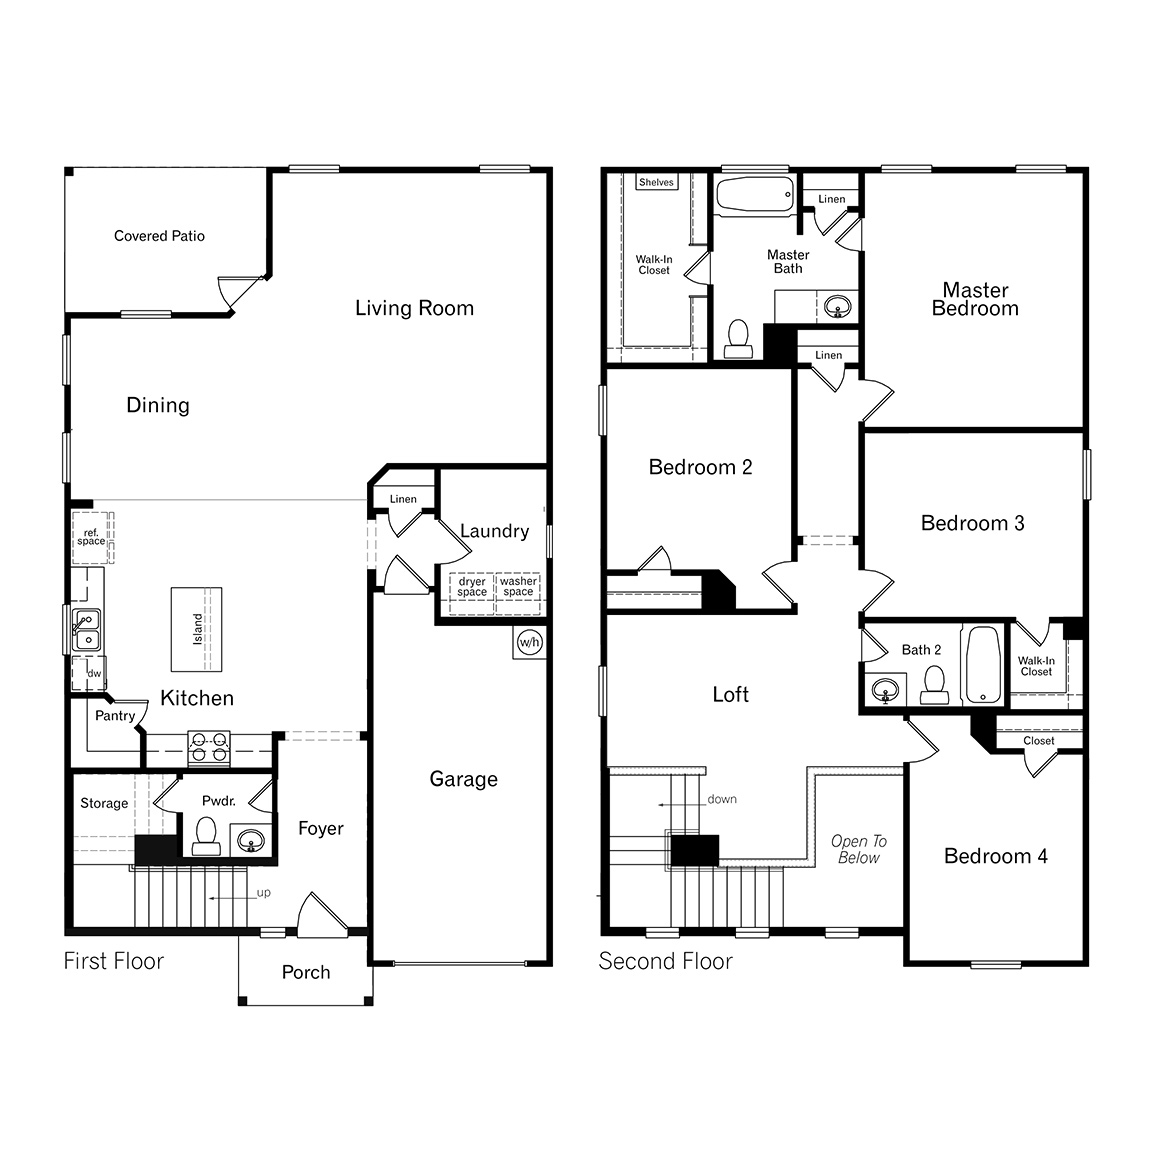 DR Horton San Antonio Laurel Vistas the stanley floor plan 2243 square feet 4 bedroom 2.5 bathroom 2 story 1 car garage